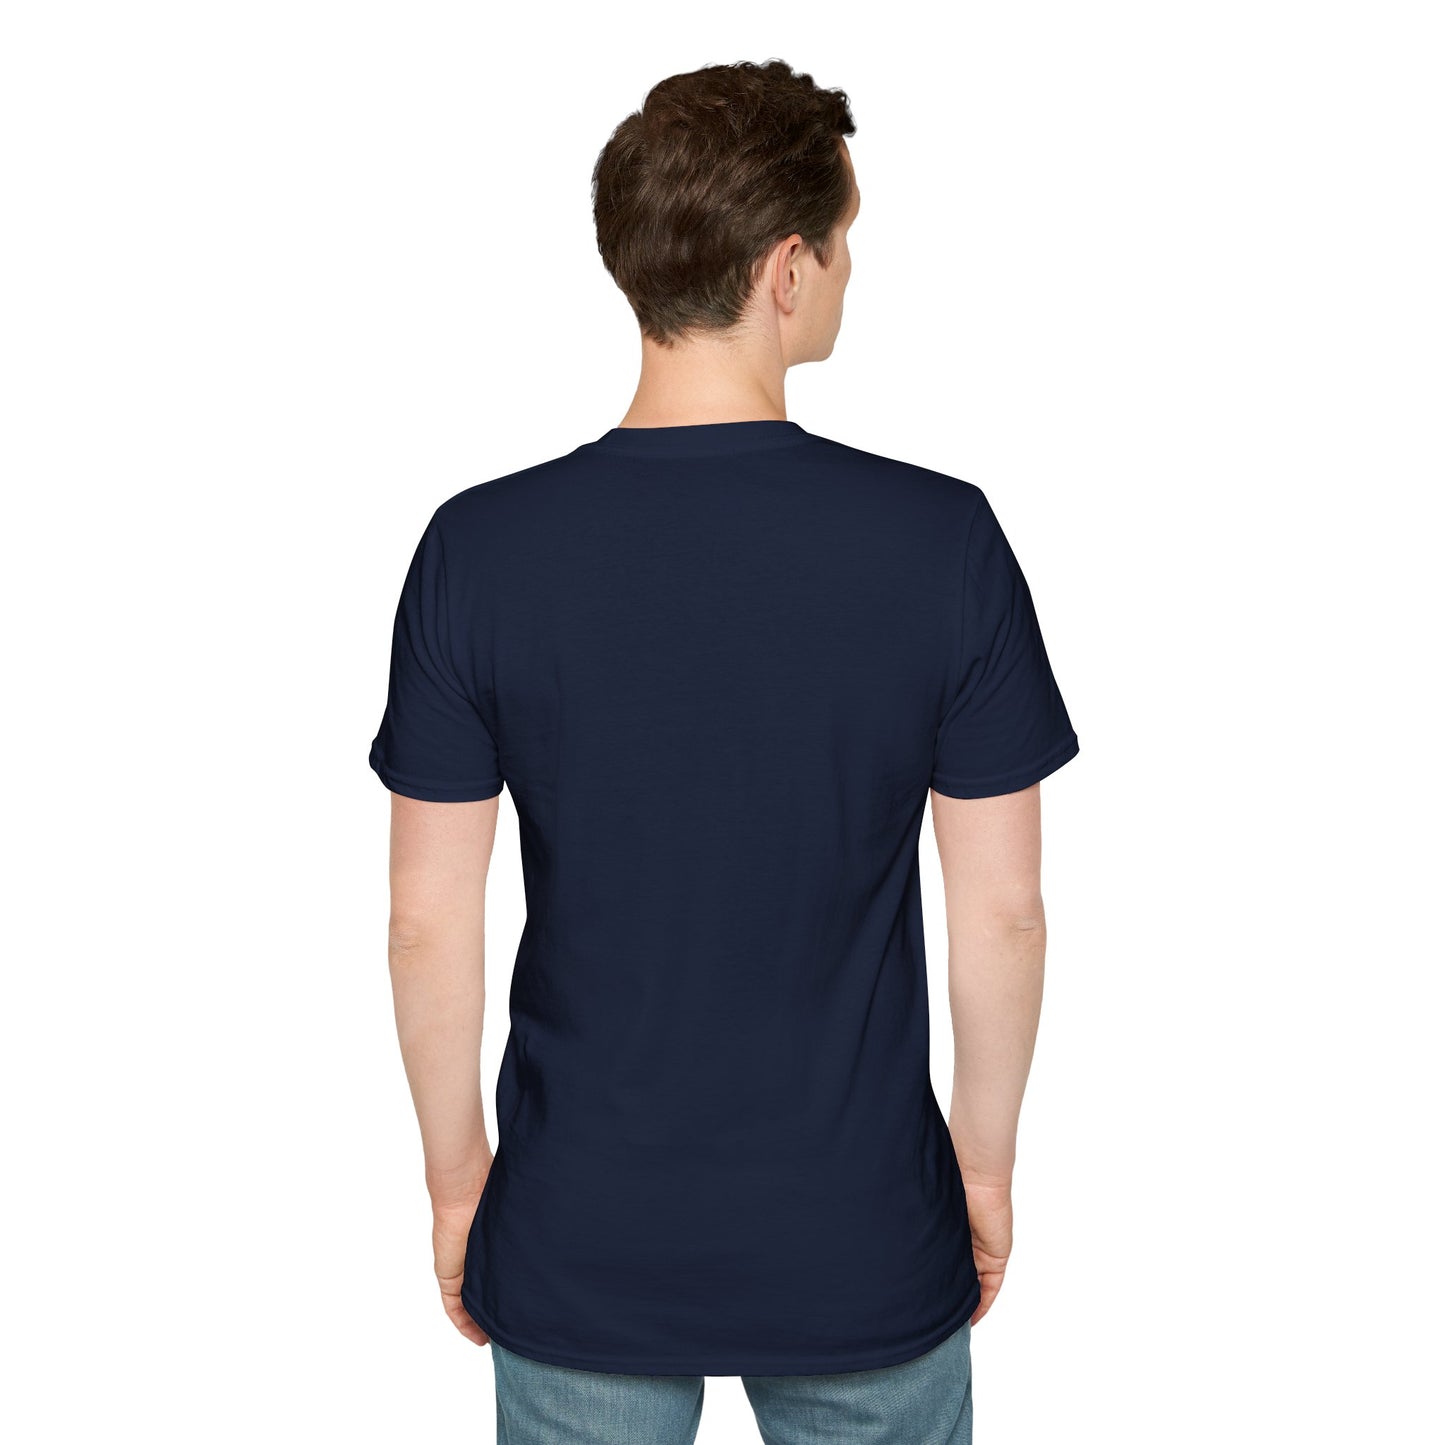 TG-26 Unisex Softstyle T-Shirt